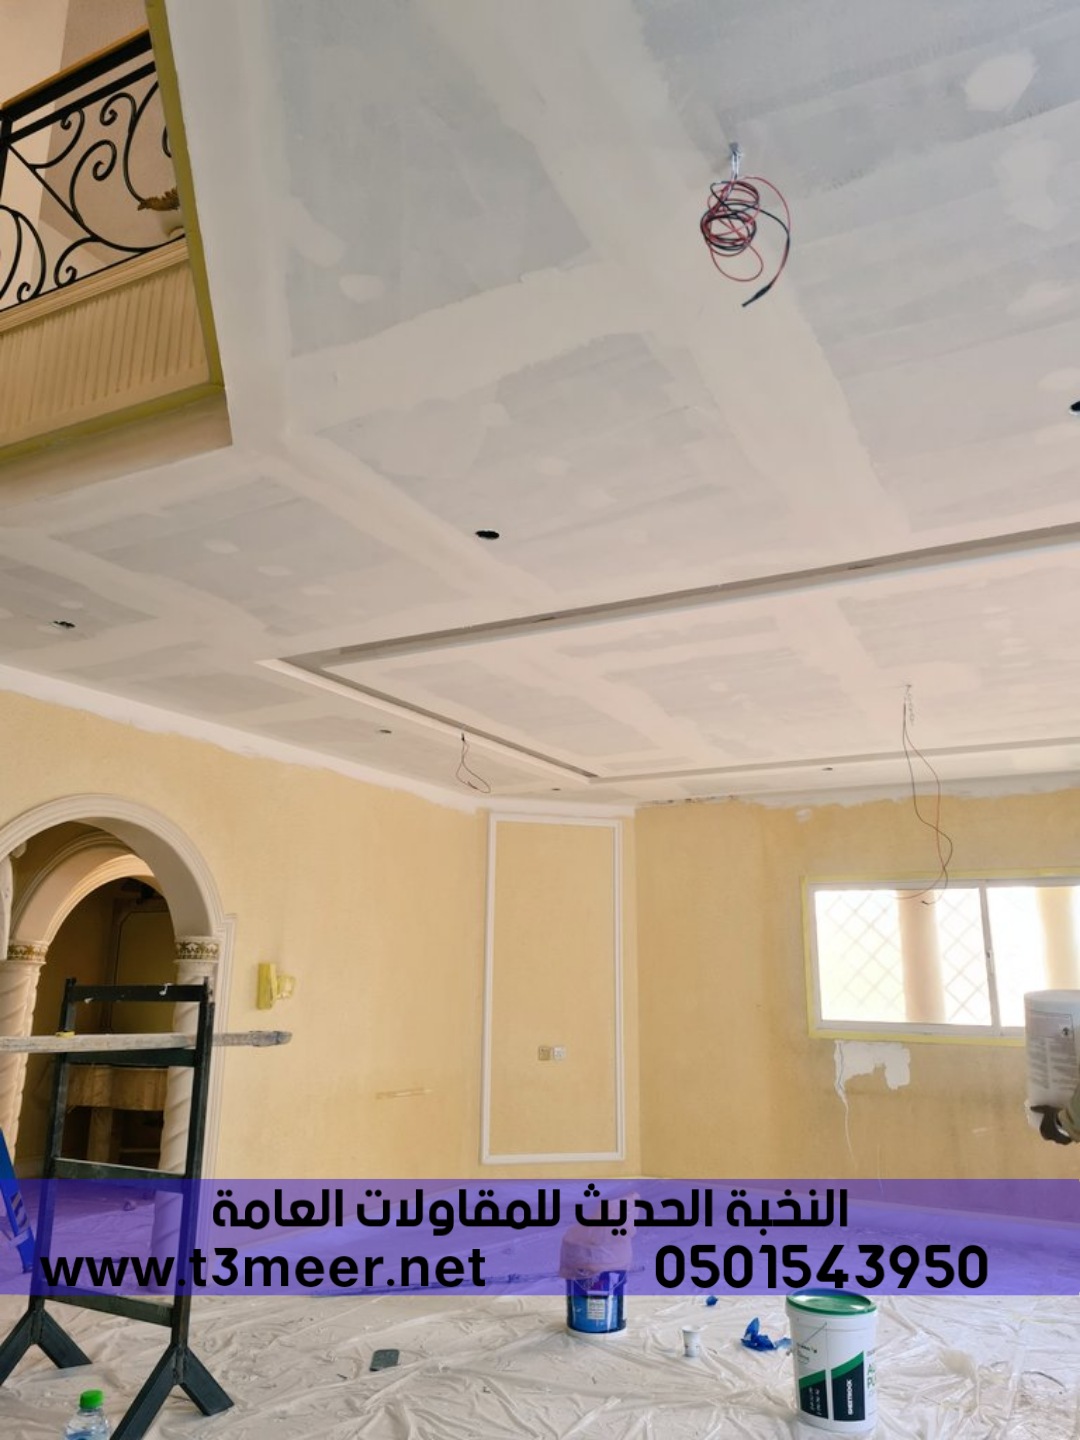 تشطيب منازل و بناء عظم في الرياض , 0501543950 P_2431ff2k93